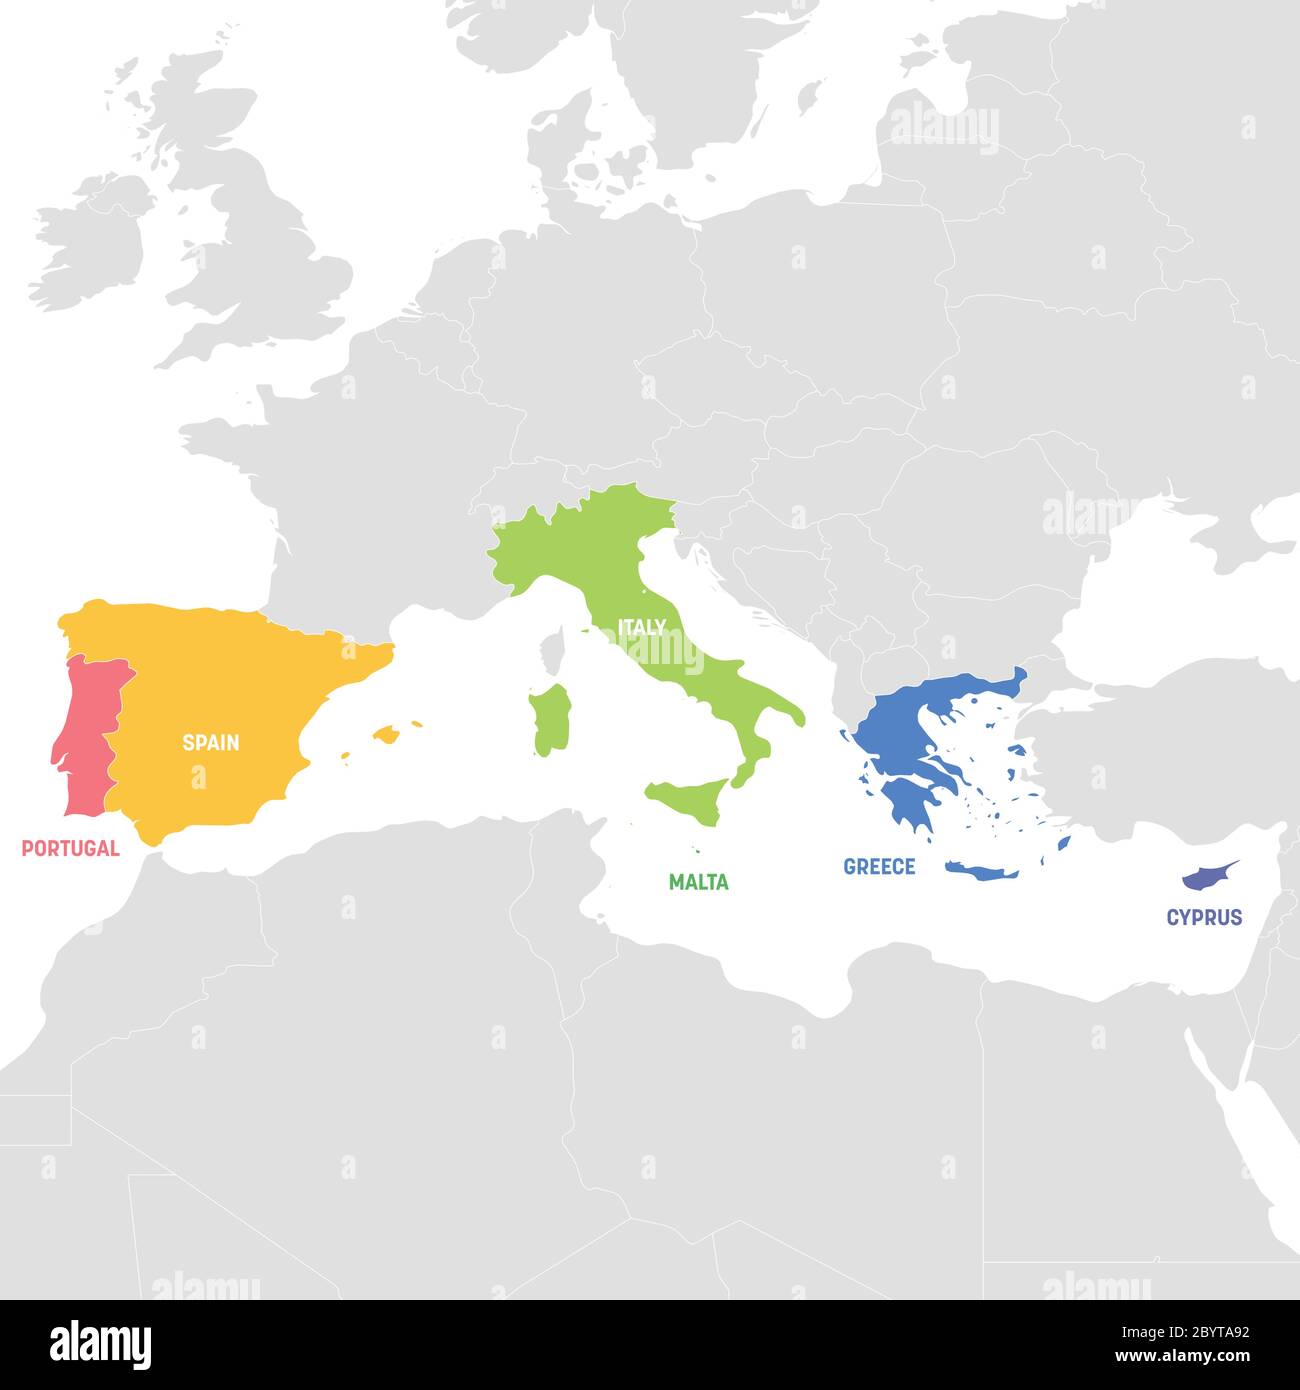 Region Südeuropa. Bunte Karte der Länder in Südeuropa rund um das Mittelmeer. Vektorgrafik. Stock Vektor